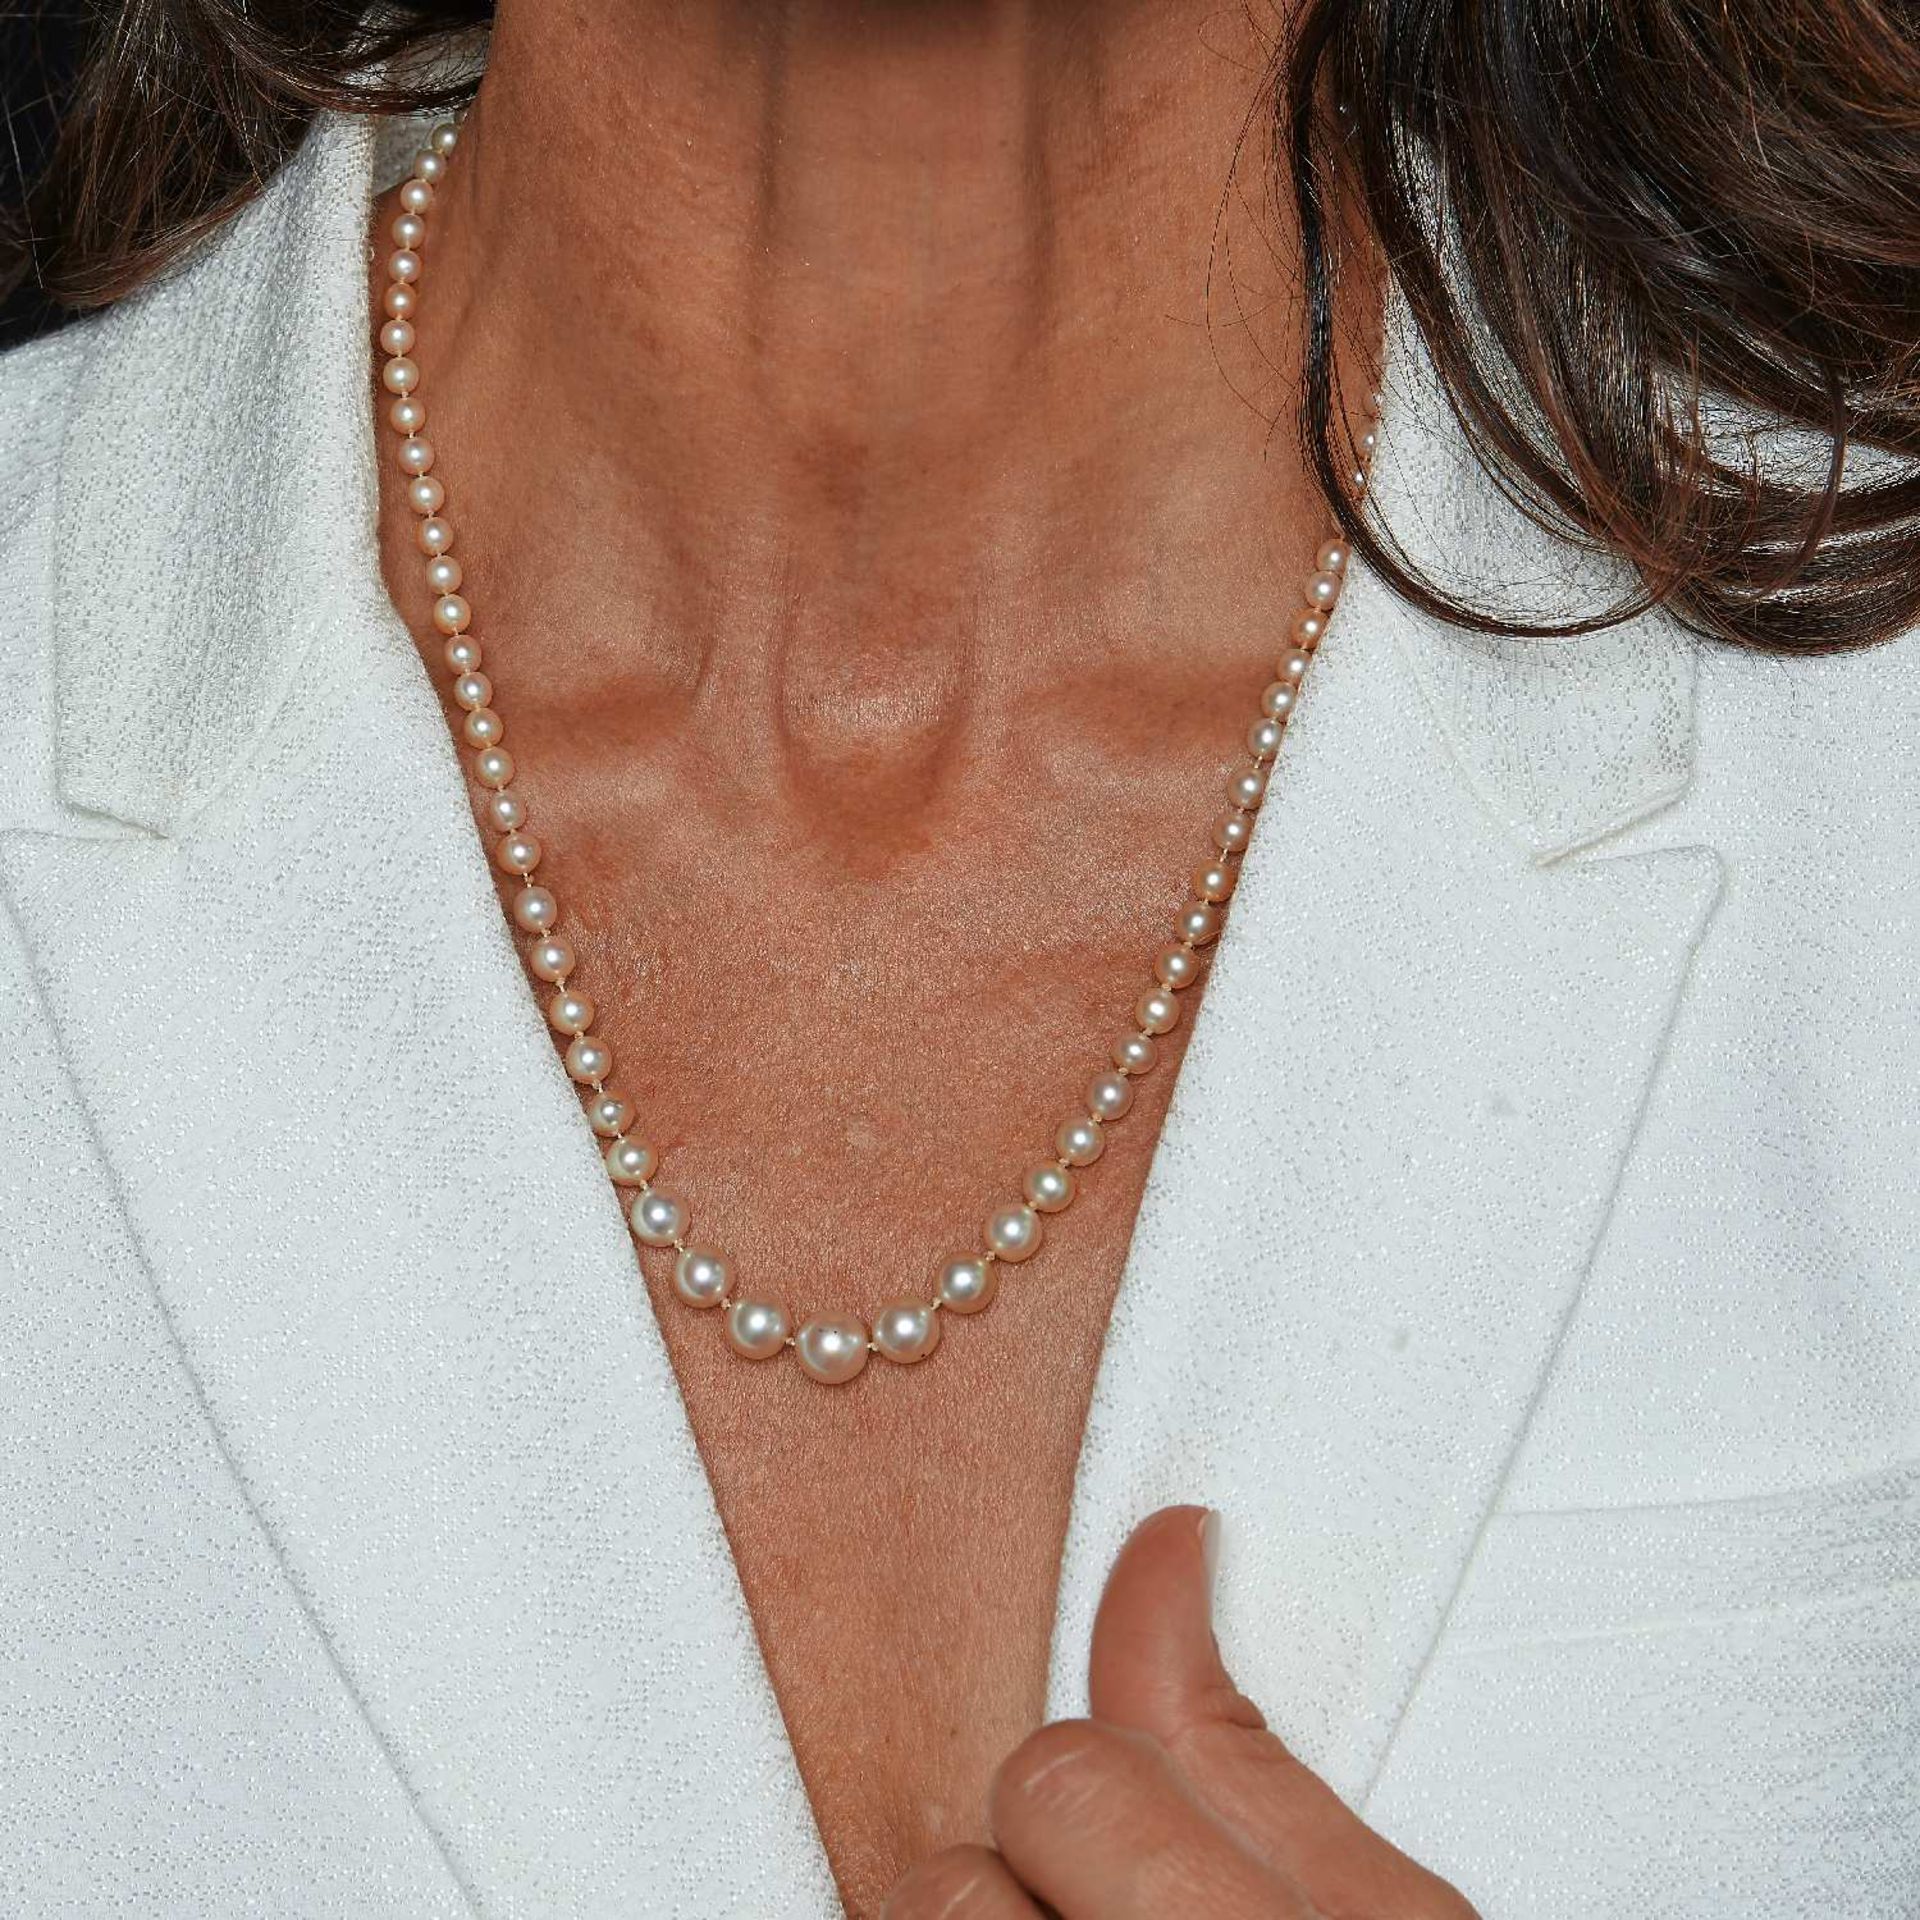 COLLIER PERLES FINES ET CULTURE MELANGEES Le collier est formé de perles fines (non testées) et de